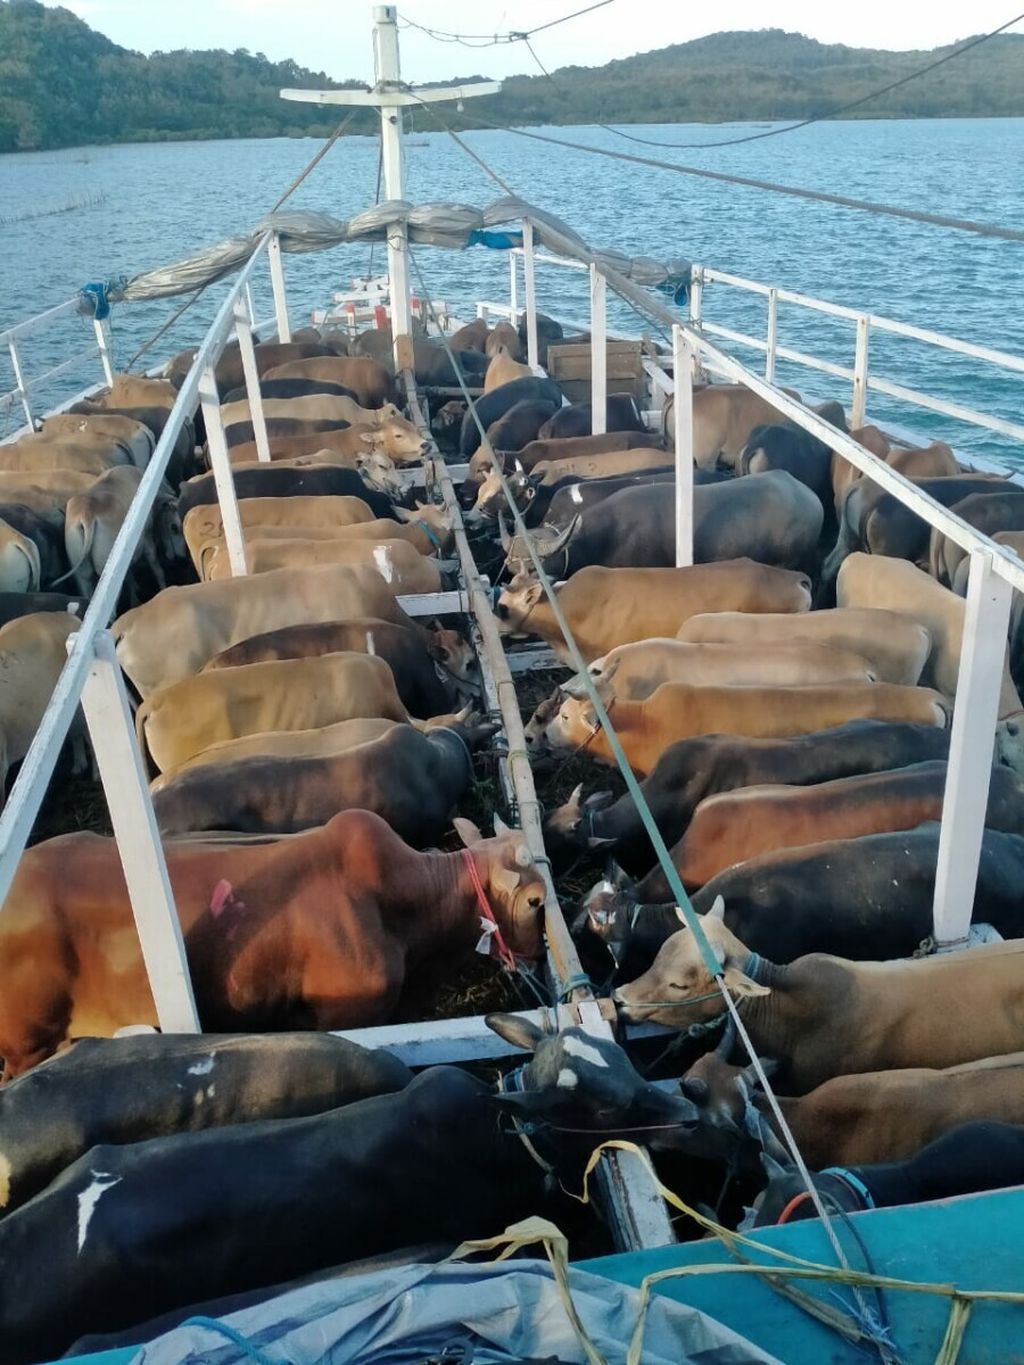 Ratusan sapi dari Pulau Madura dikirim menggunakan kapal ternak menuju ke Pulau Jawa, Agustus 2020.